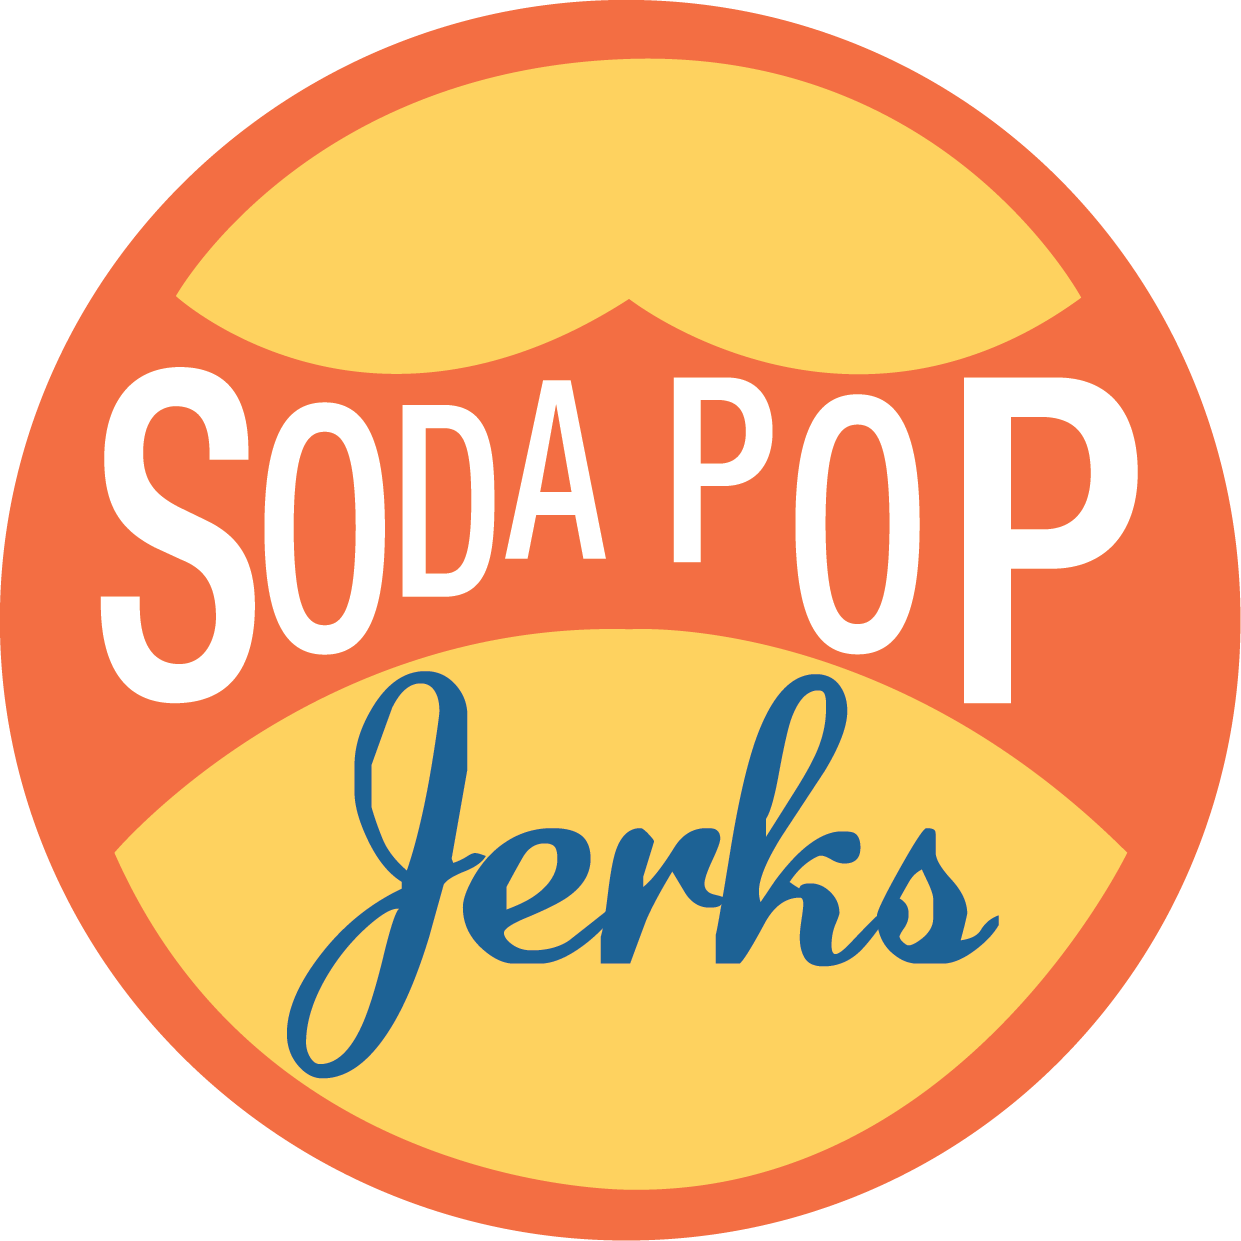 Soda Pop Jerks